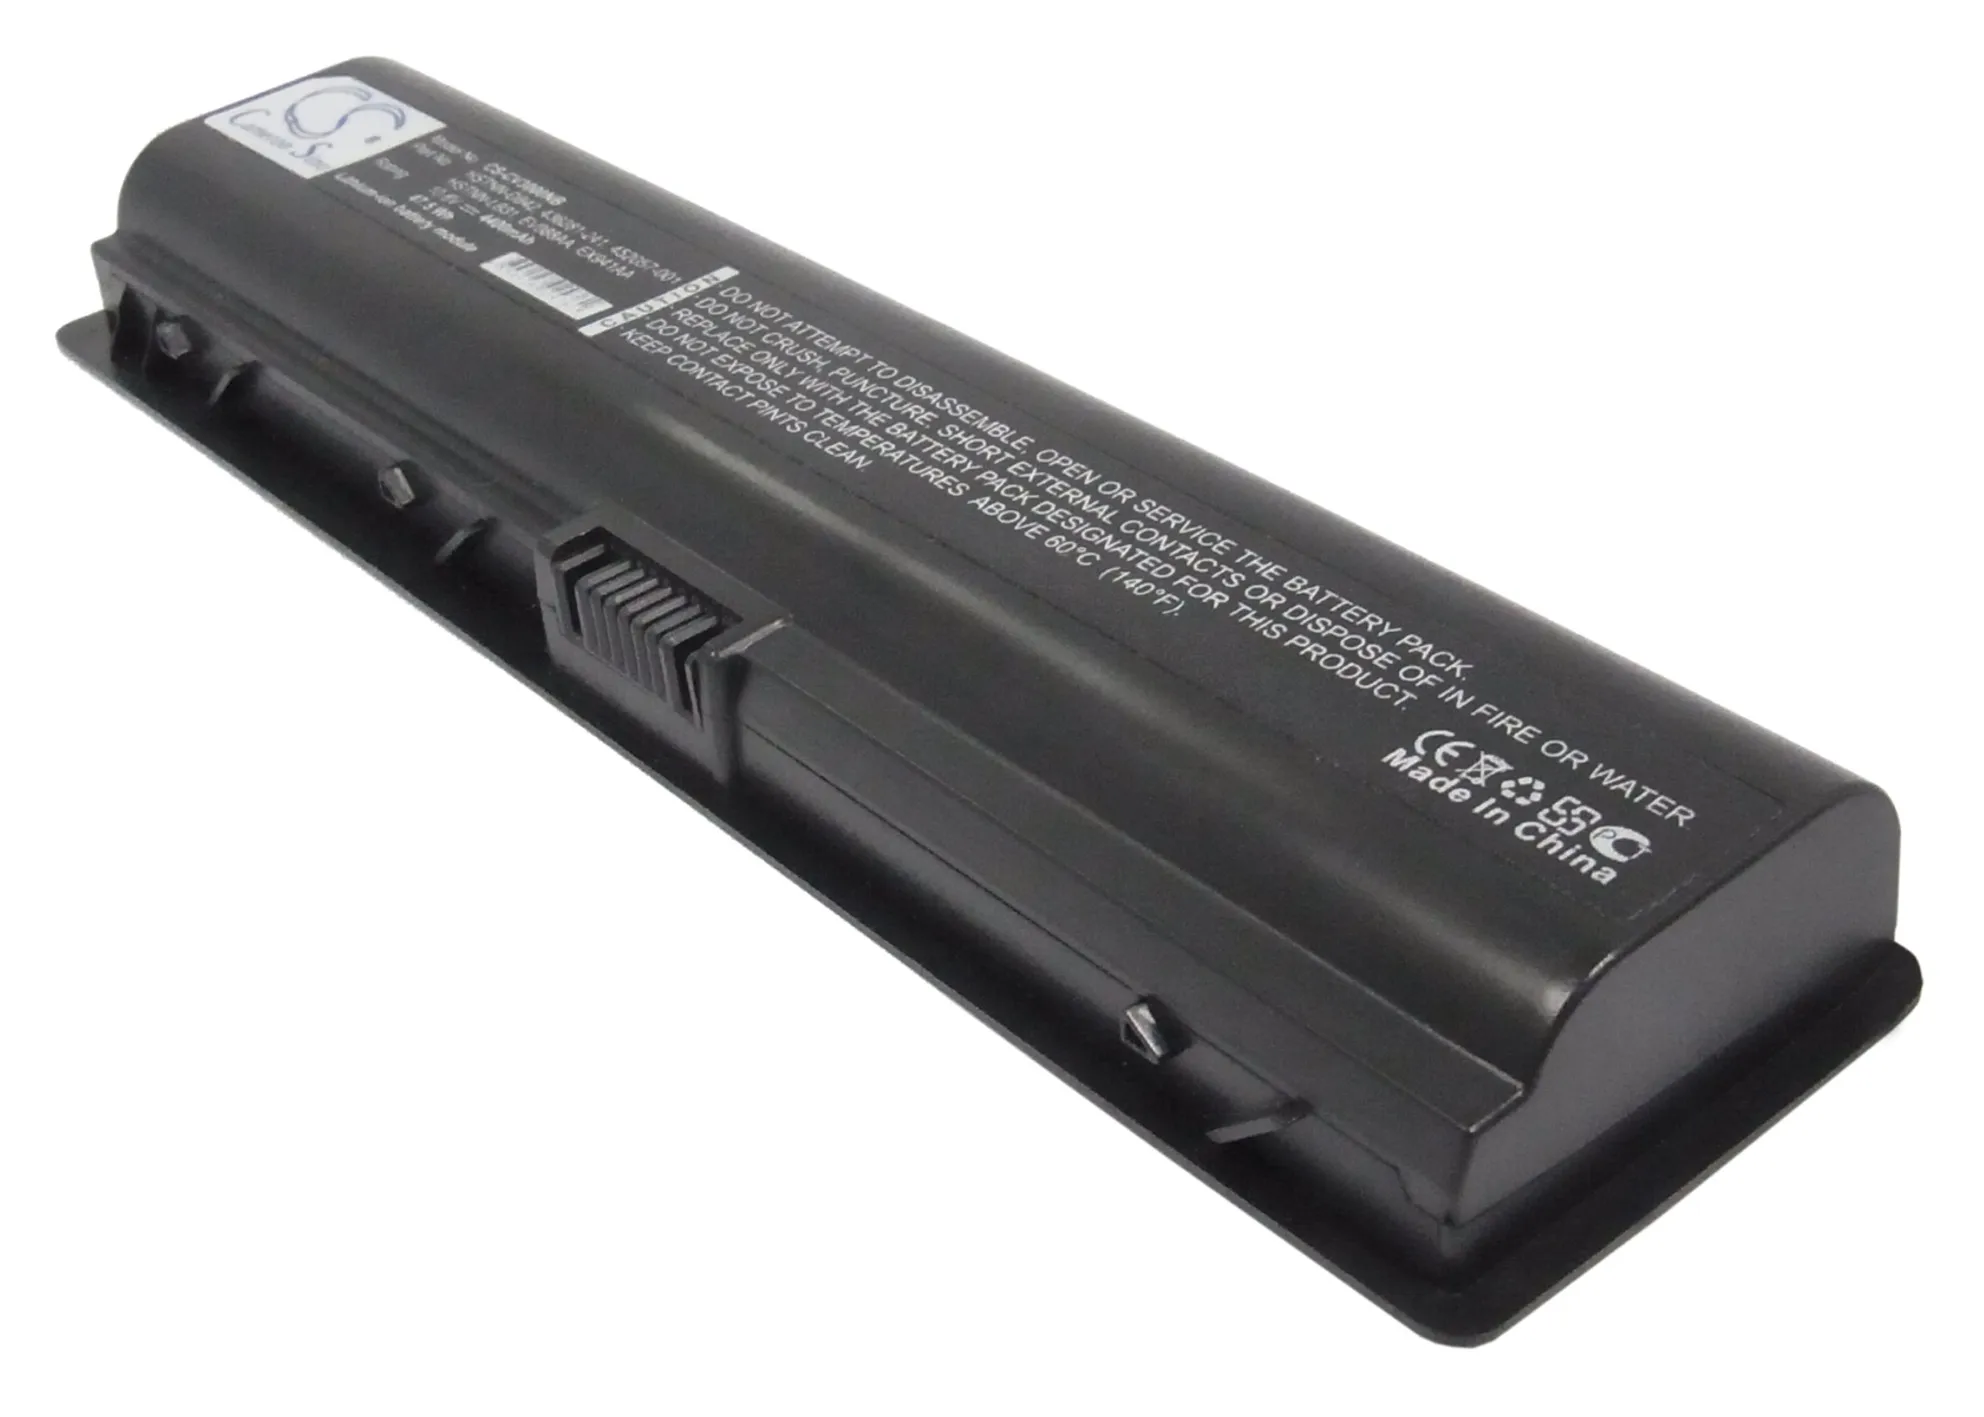 

CS 4400mAh battery for Compaq Presario A900,C700,C700EM,C700ET,C700LA,V3037TU,V3181TU,V3672TU,411463-141,411463-251